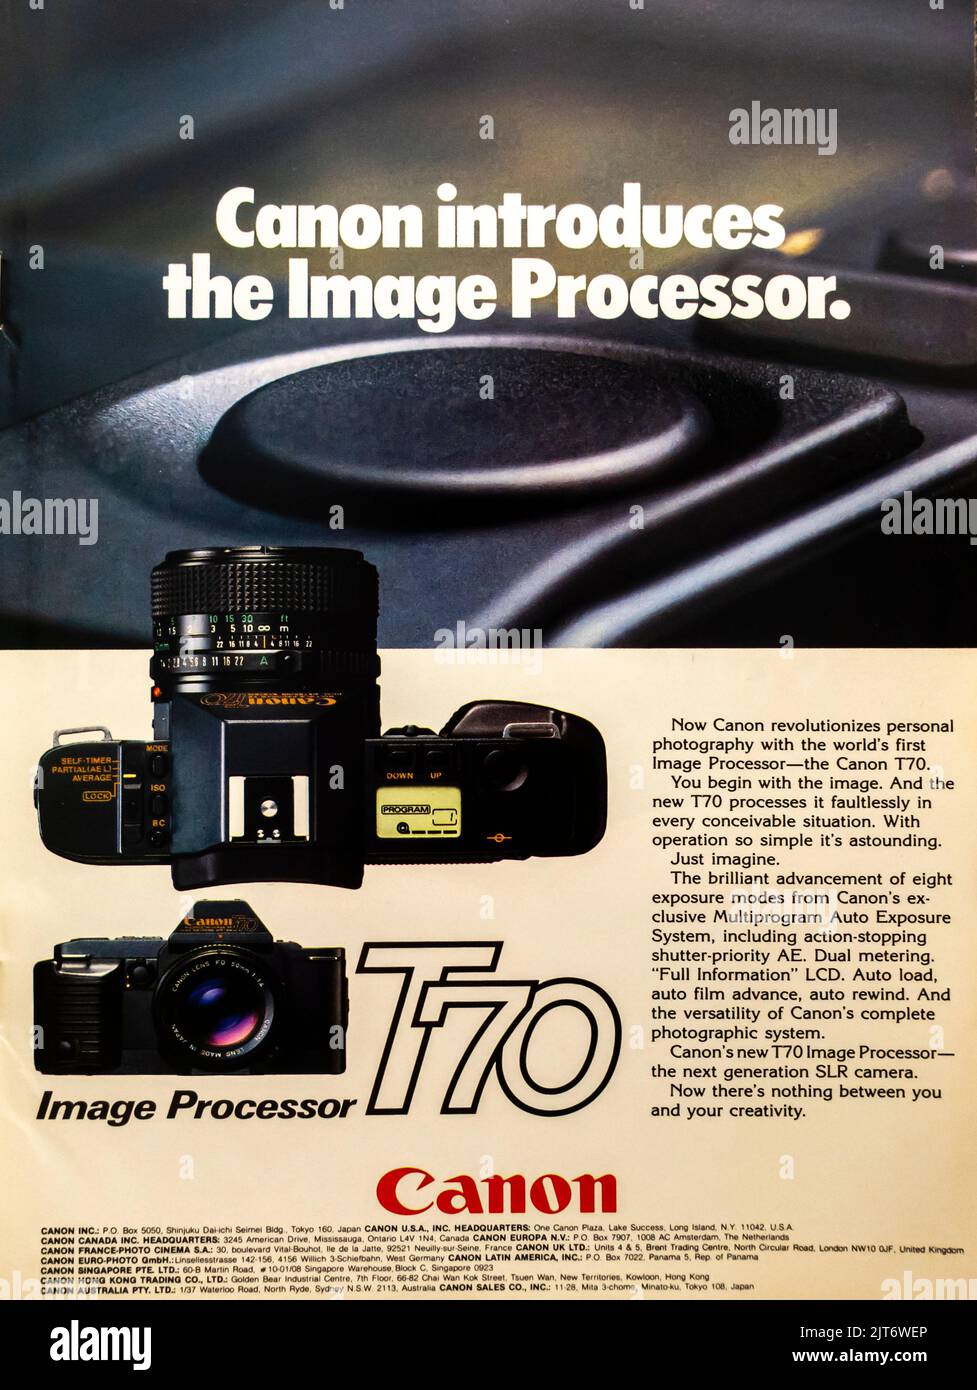 Processeur d'image Canon T70, publicité pour appareil photo placée dans un magazine NatGeo, août 1984 Banque D'Images